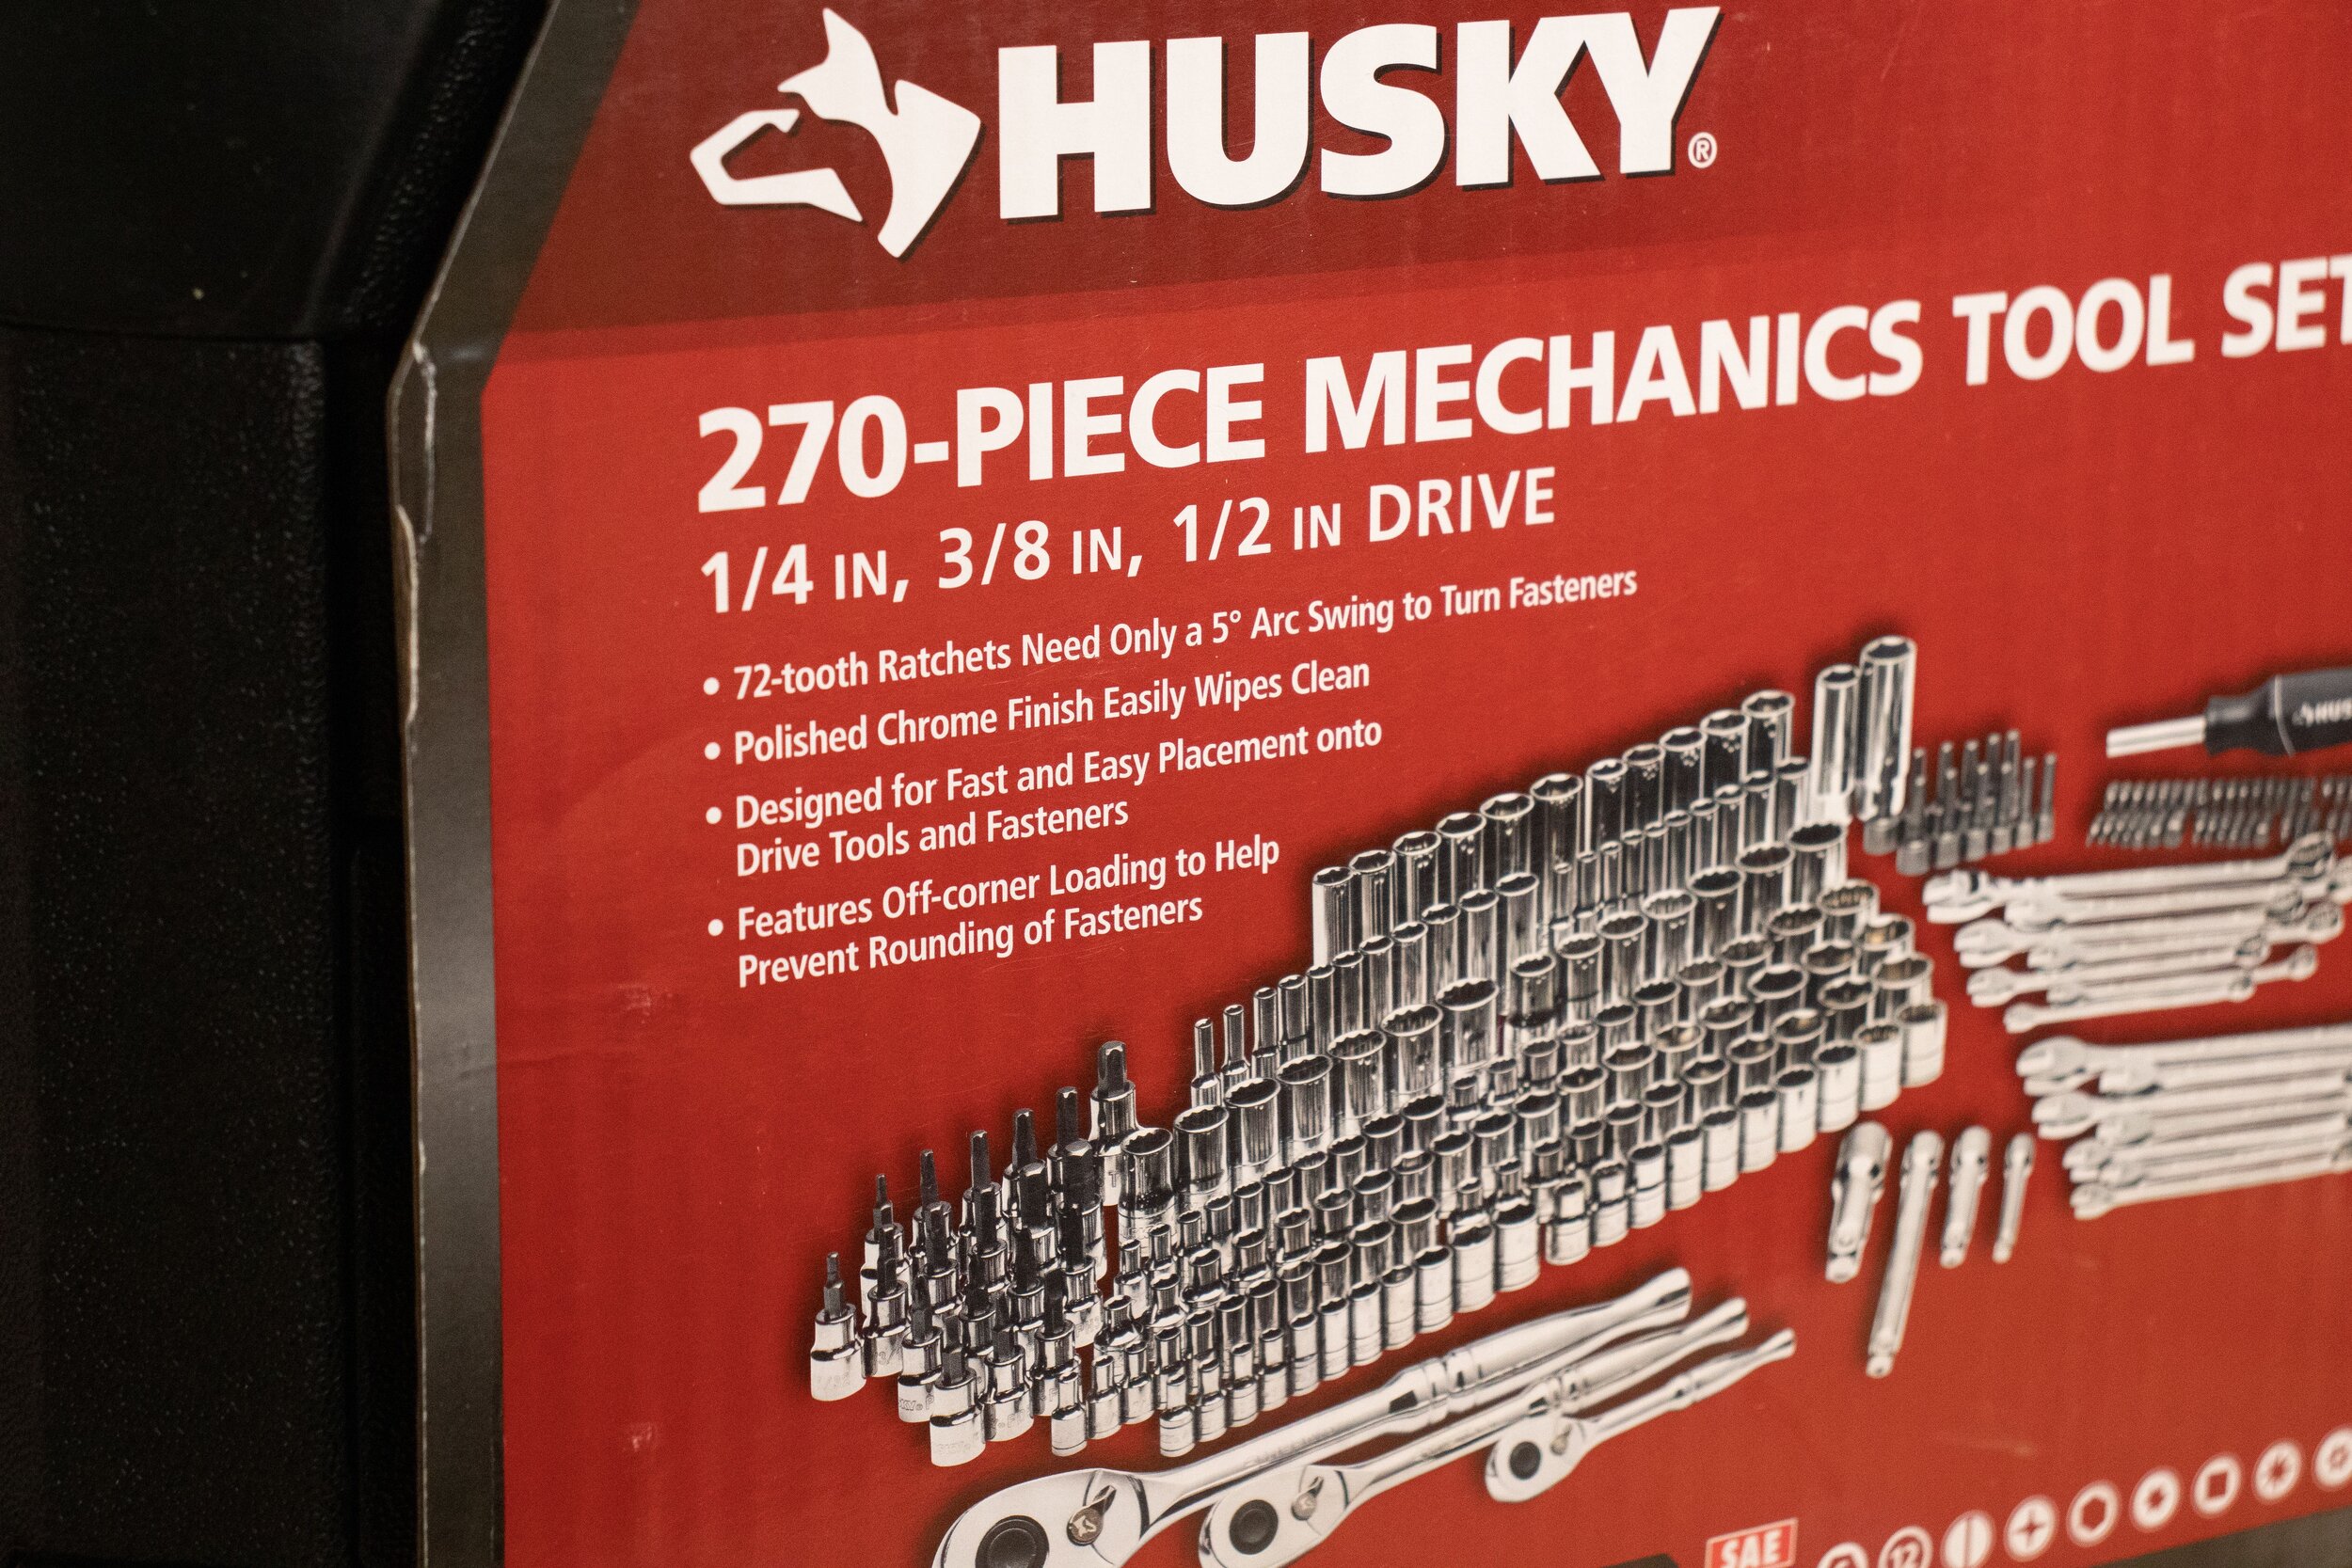 Best Husky Tool Deals — 3x3 Custom